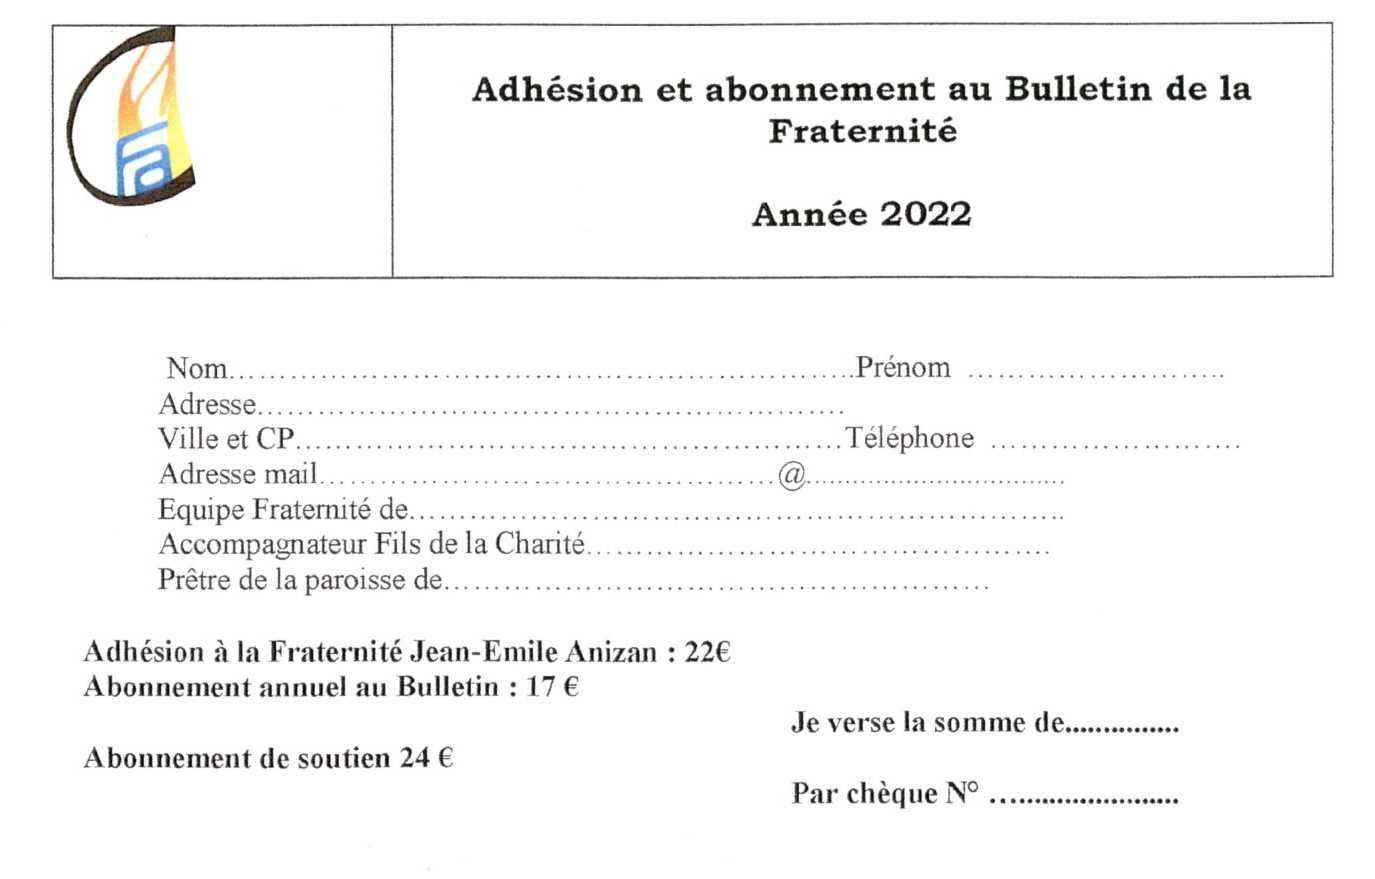 Bulletin d'adhésion et abonnement 2022 Fraternité Anizan